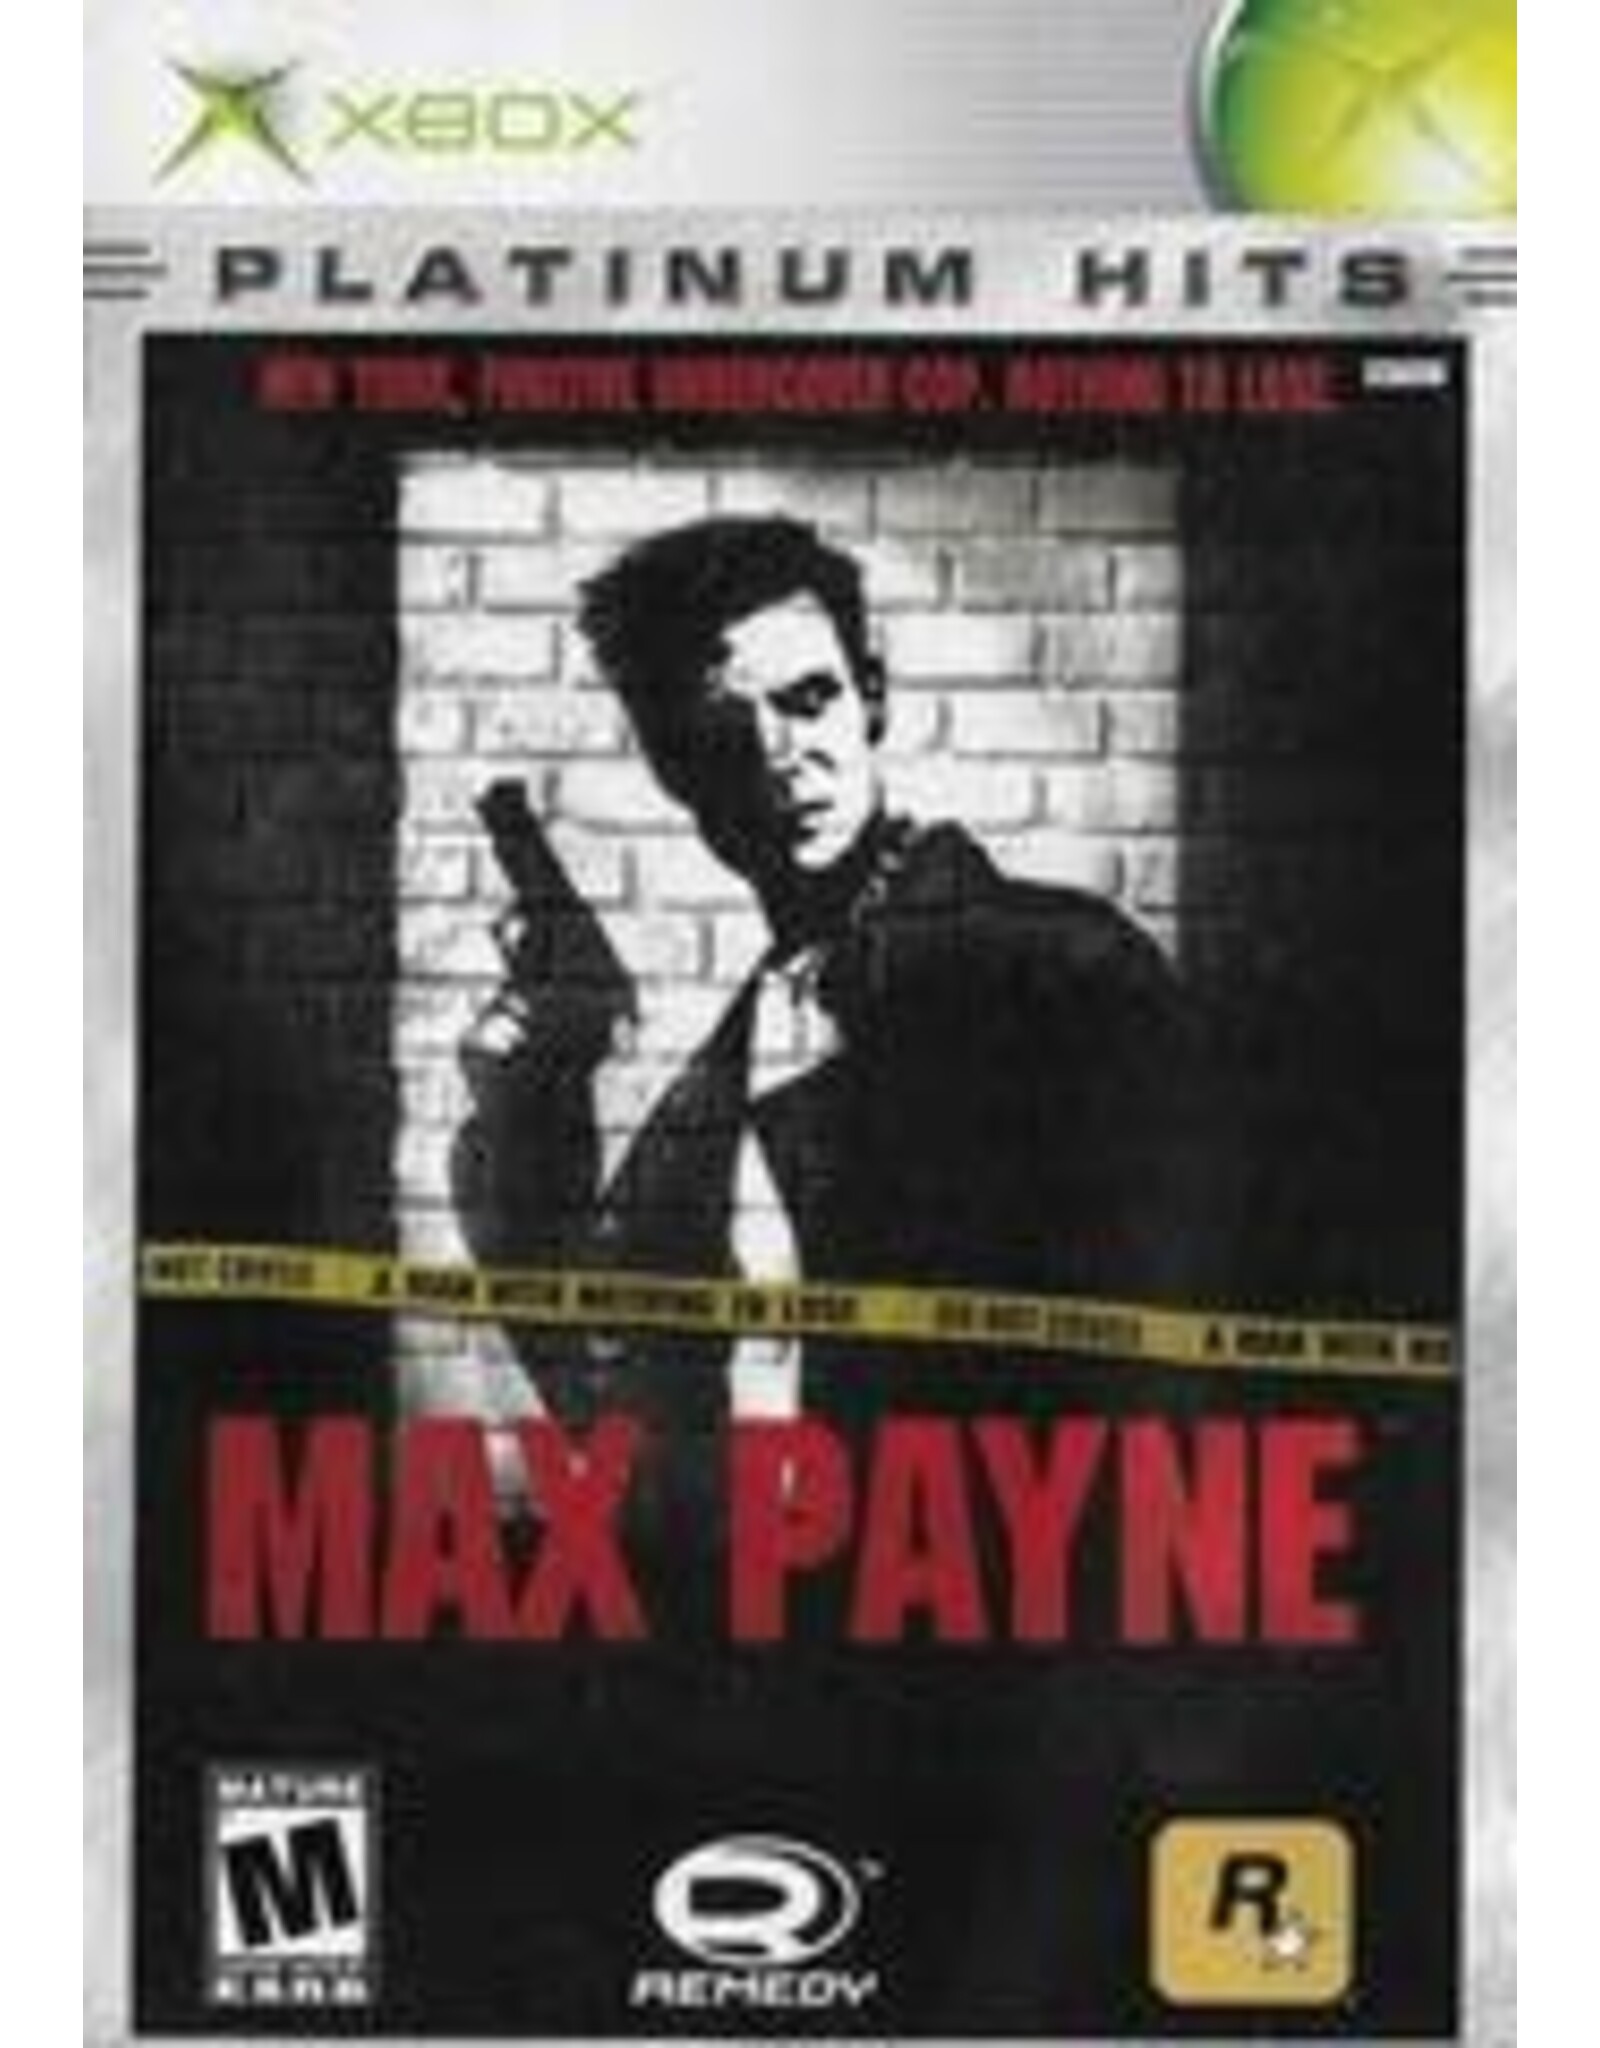 Xbox Max Payne (Platinum Hits, CiB)